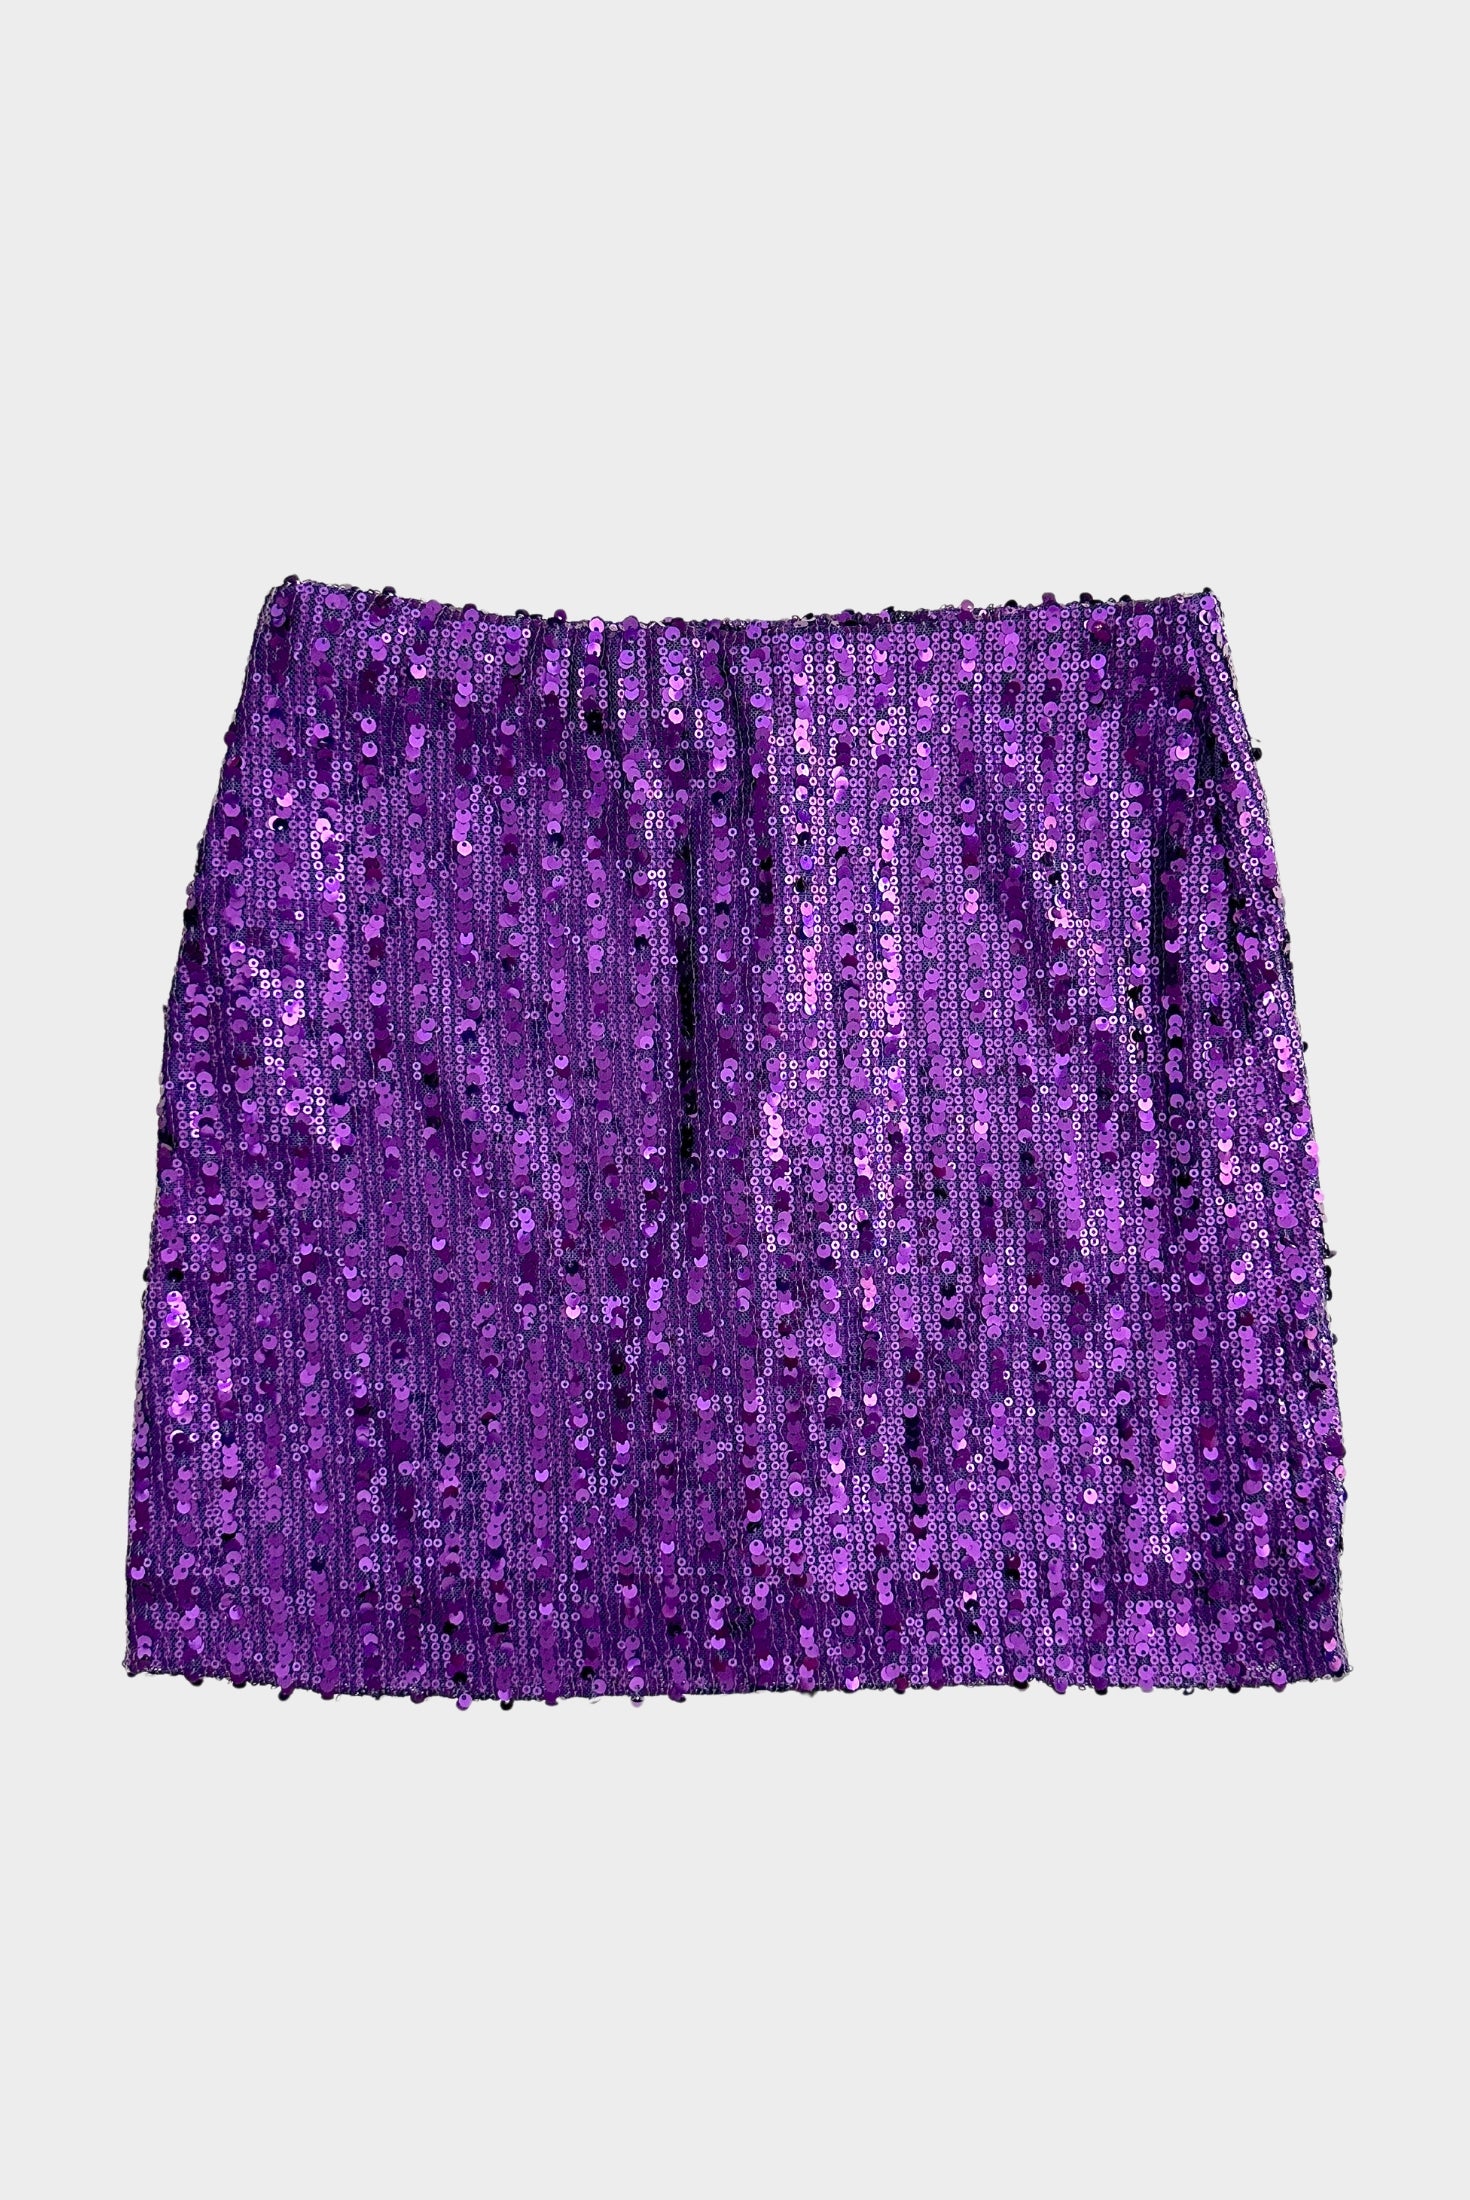 חצאית מיני פייטים בצבע סגול